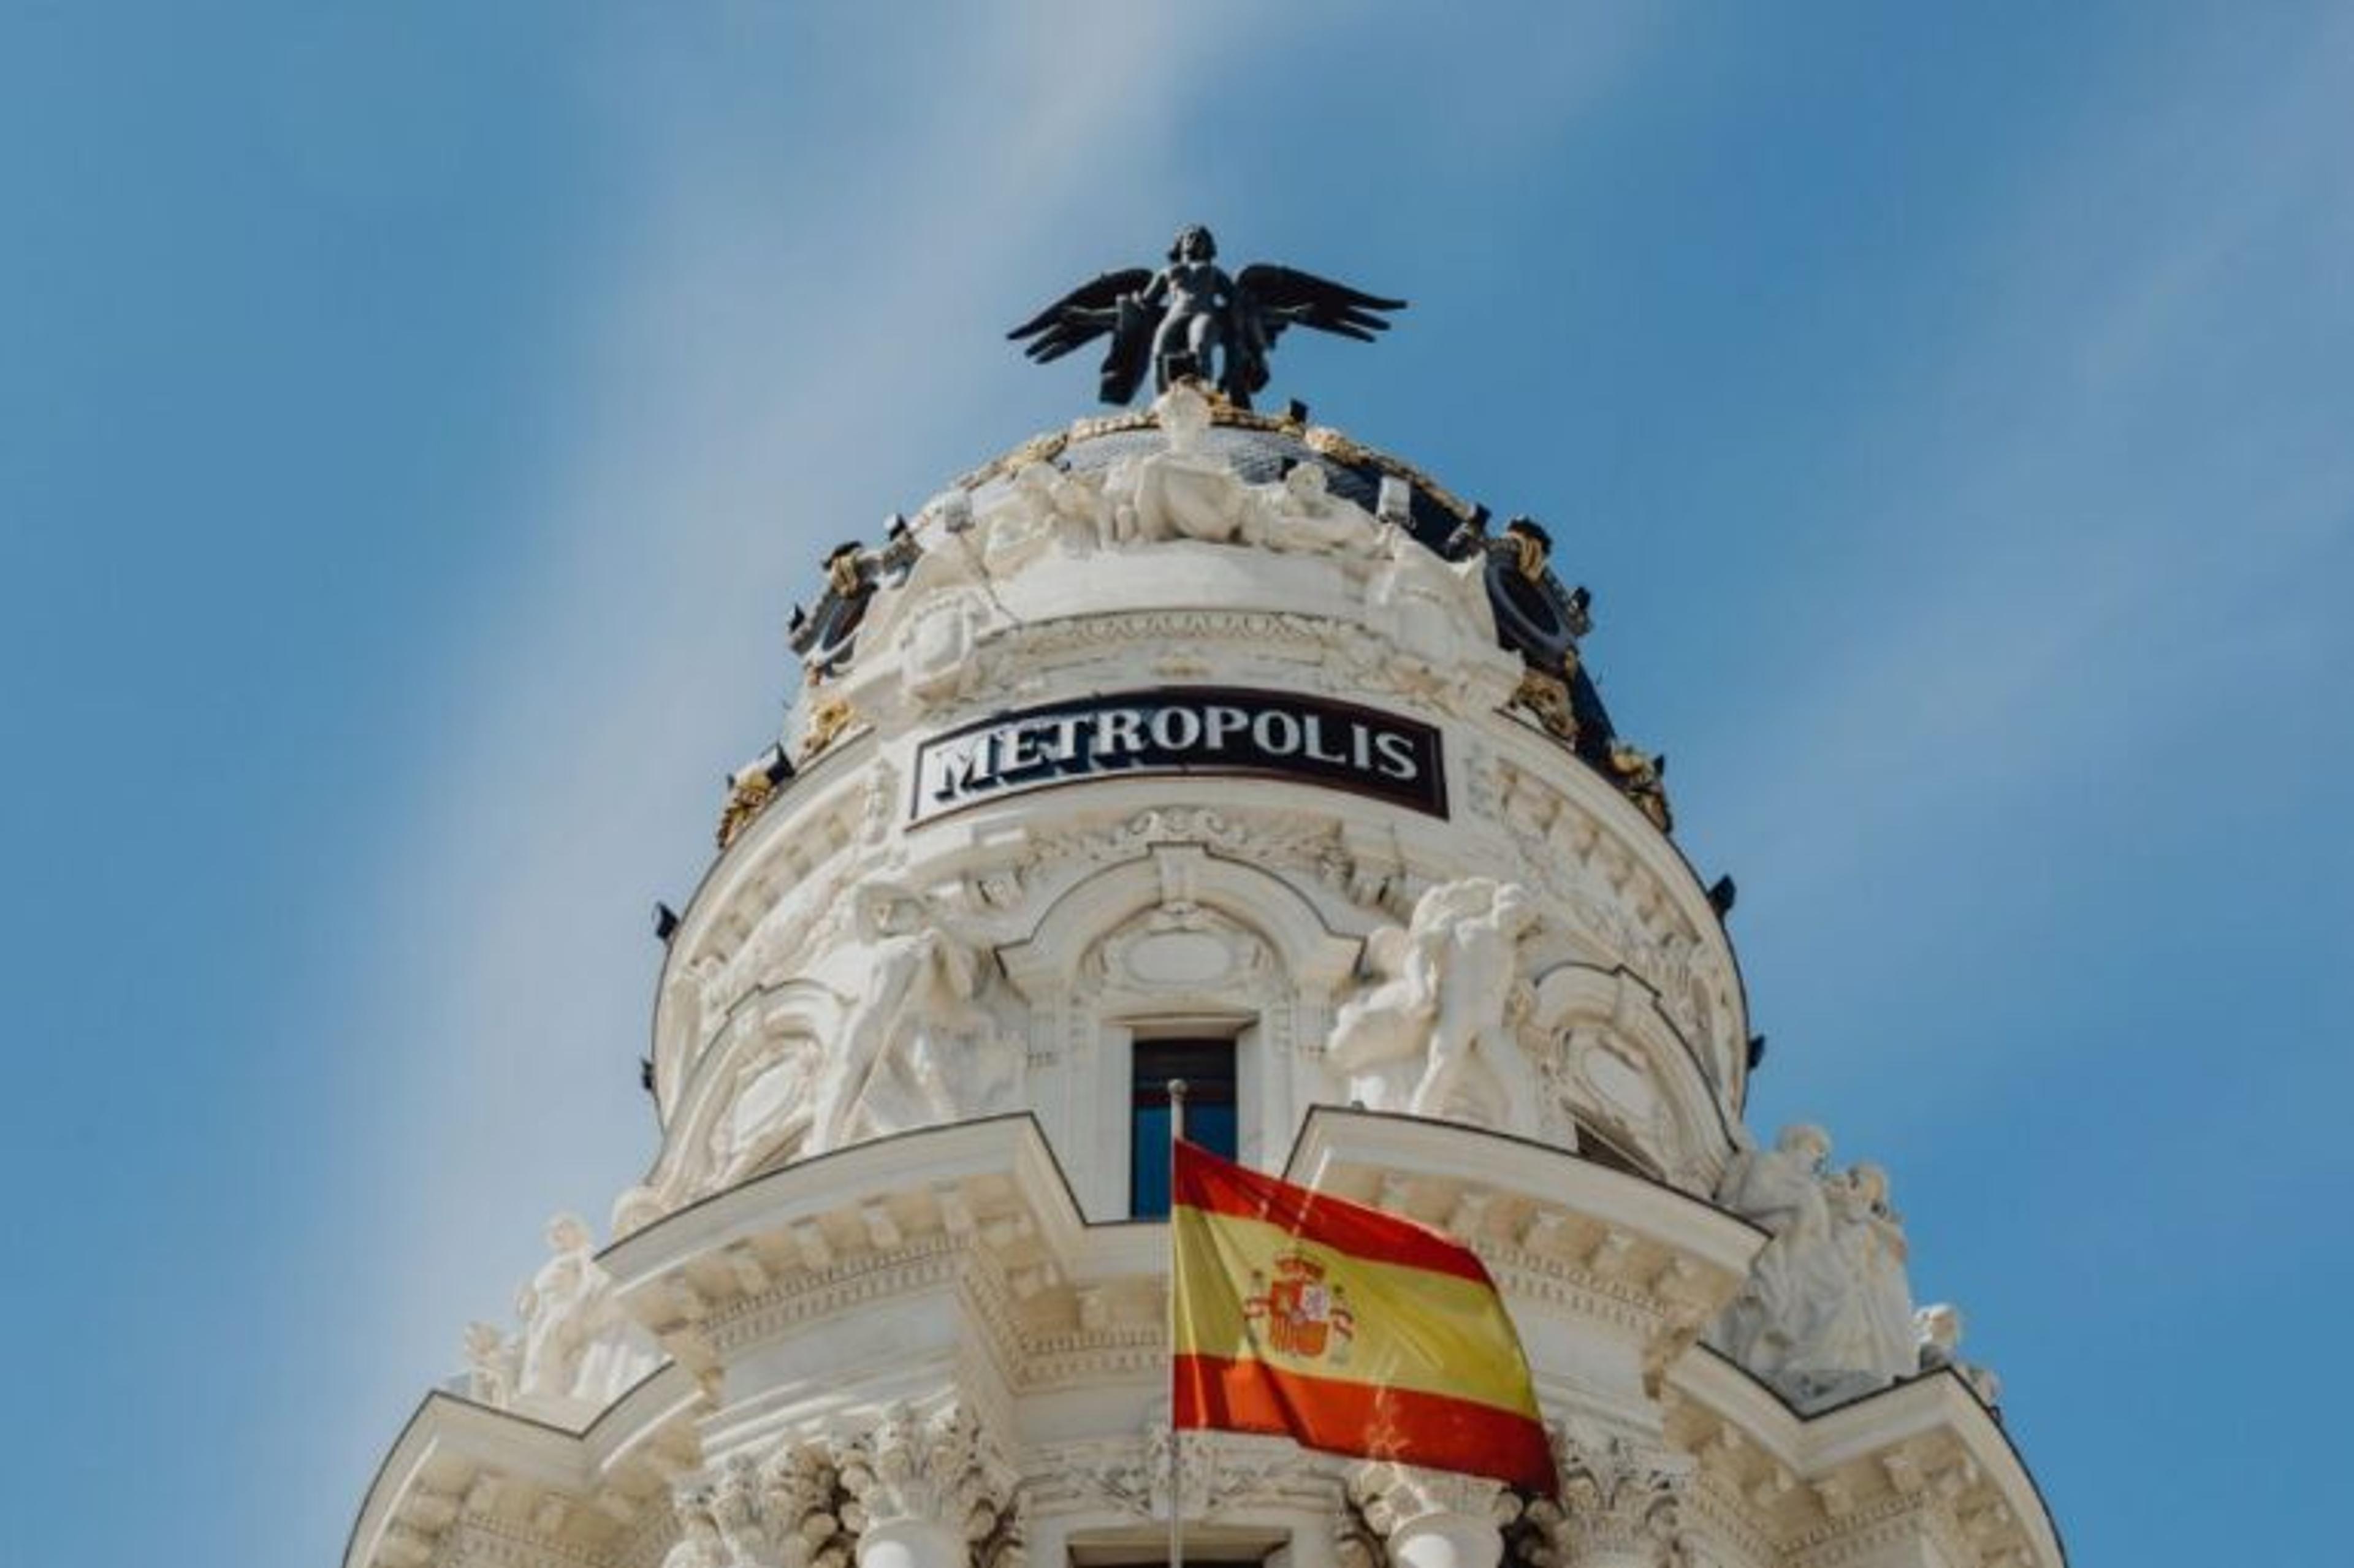 Budynek Metropolis, flaga Hiszpanii, posąg orła na szczycie